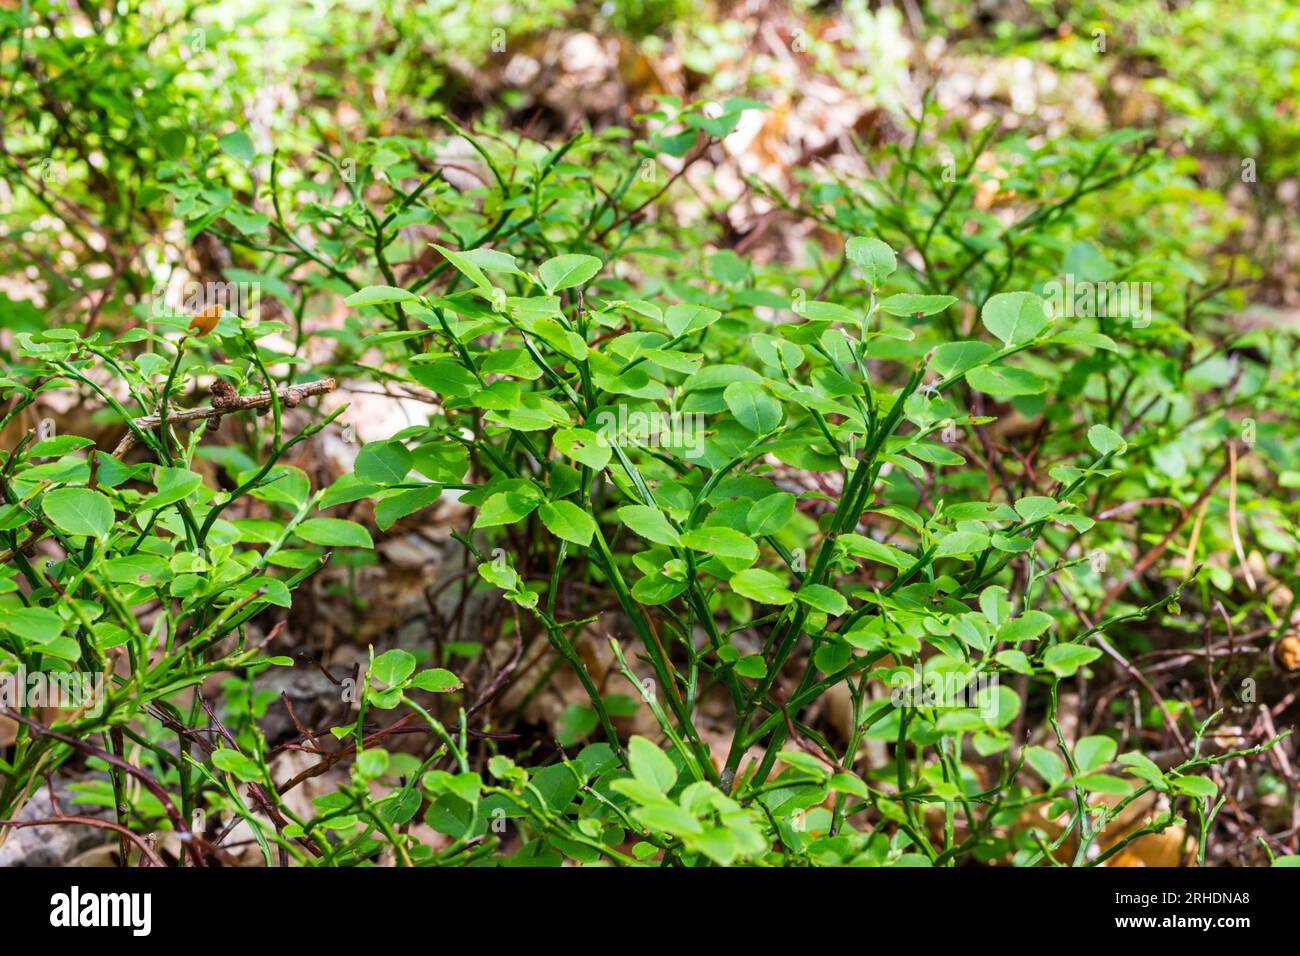 Primo piano delle foglie europee di mirtillo (Vaccinium myrtillus) nella foresta in estate, Soproni-hegyseg, Sopron, Ungheria Foto Stock